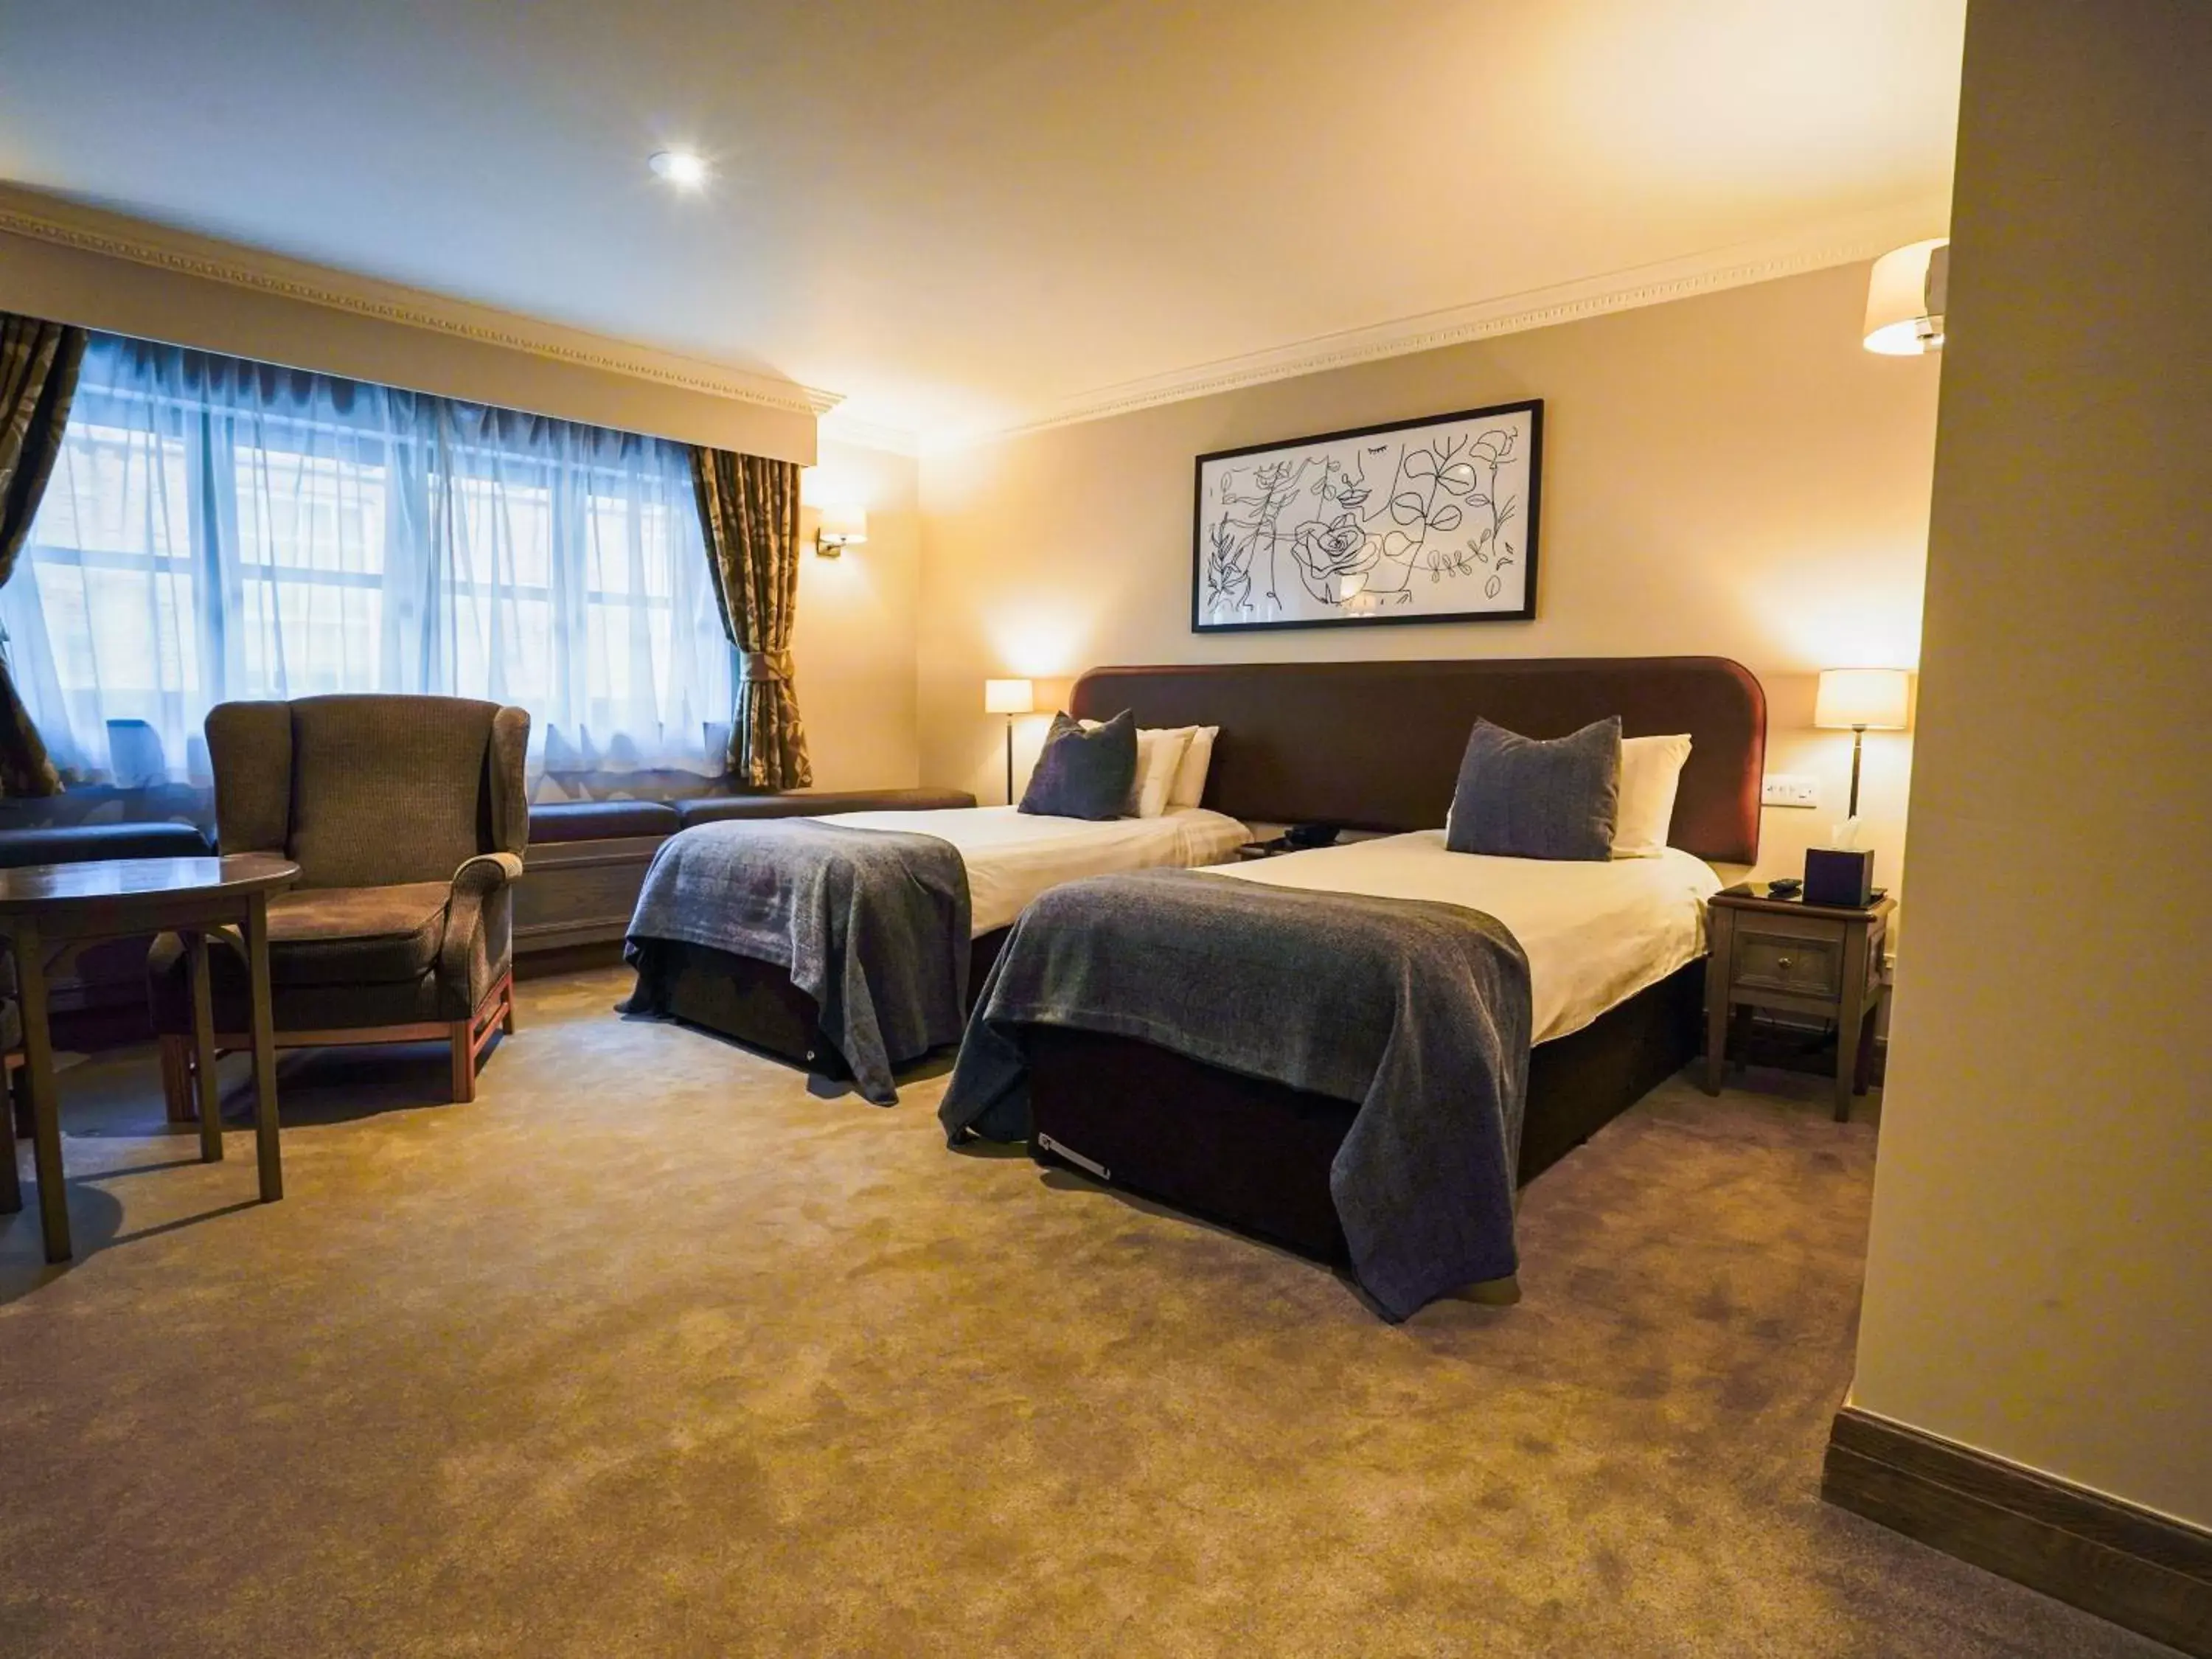 Bedroom in Villiers Hotel